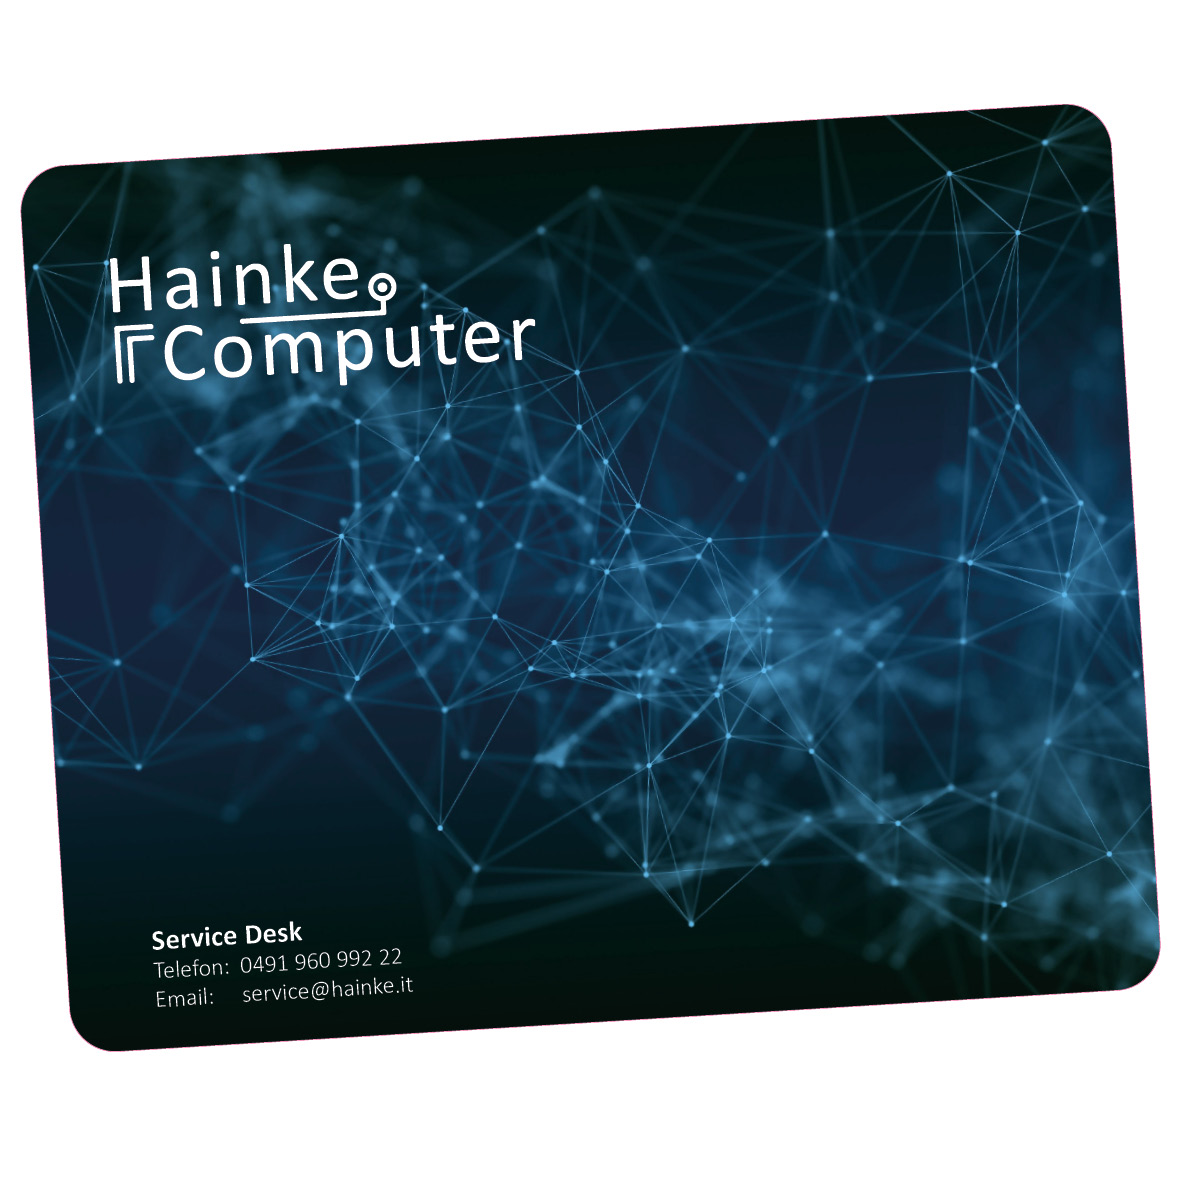 Mousepad Hainke Computer